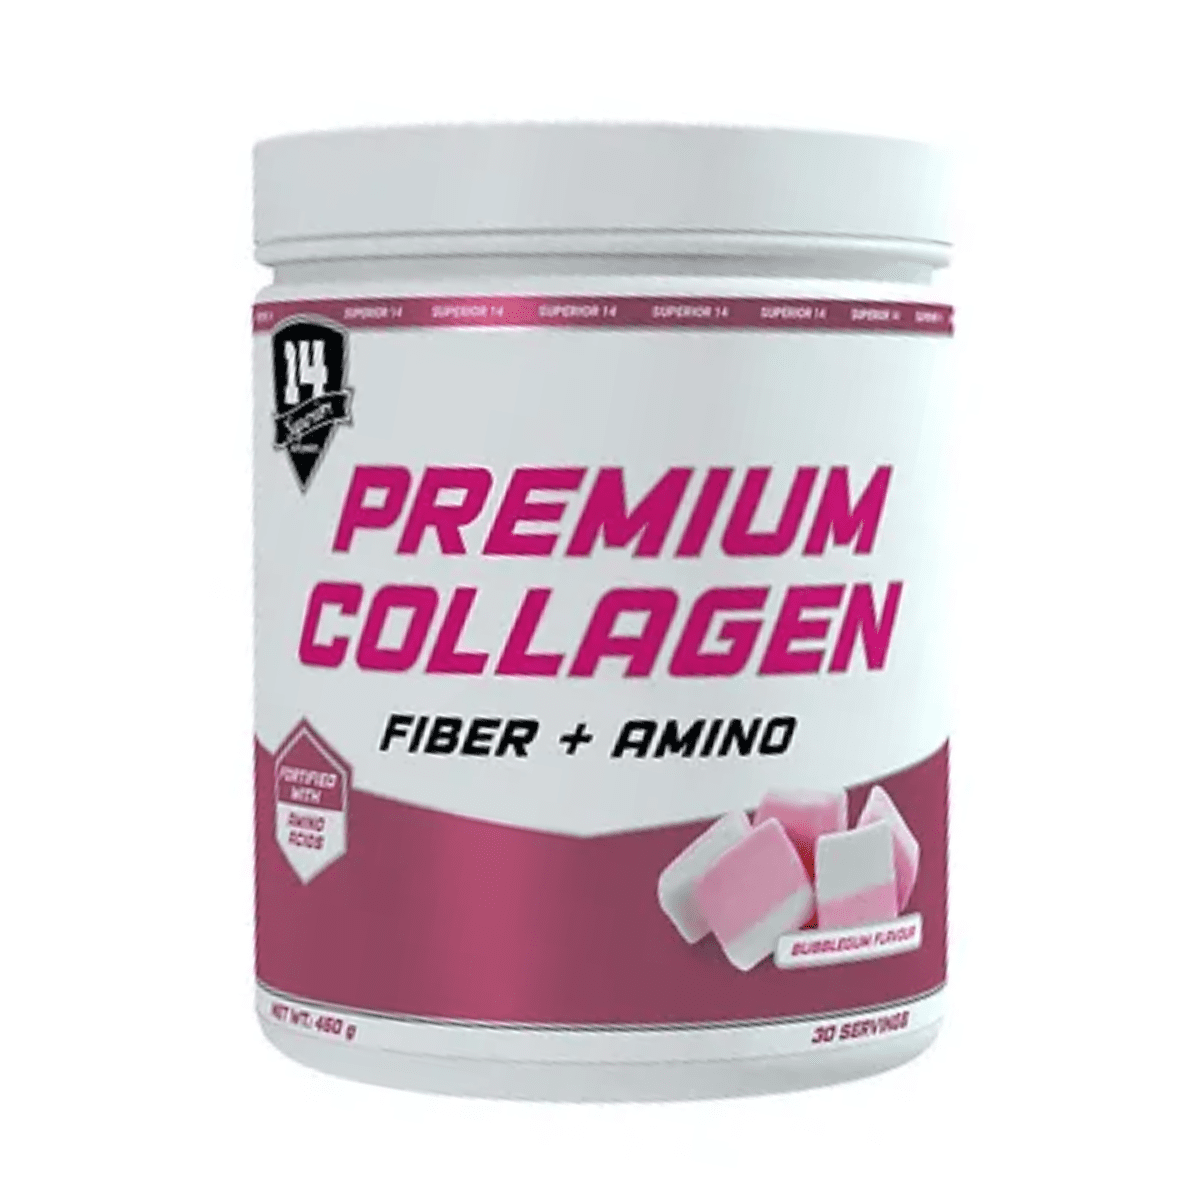 Superior Premium Collagen - 0